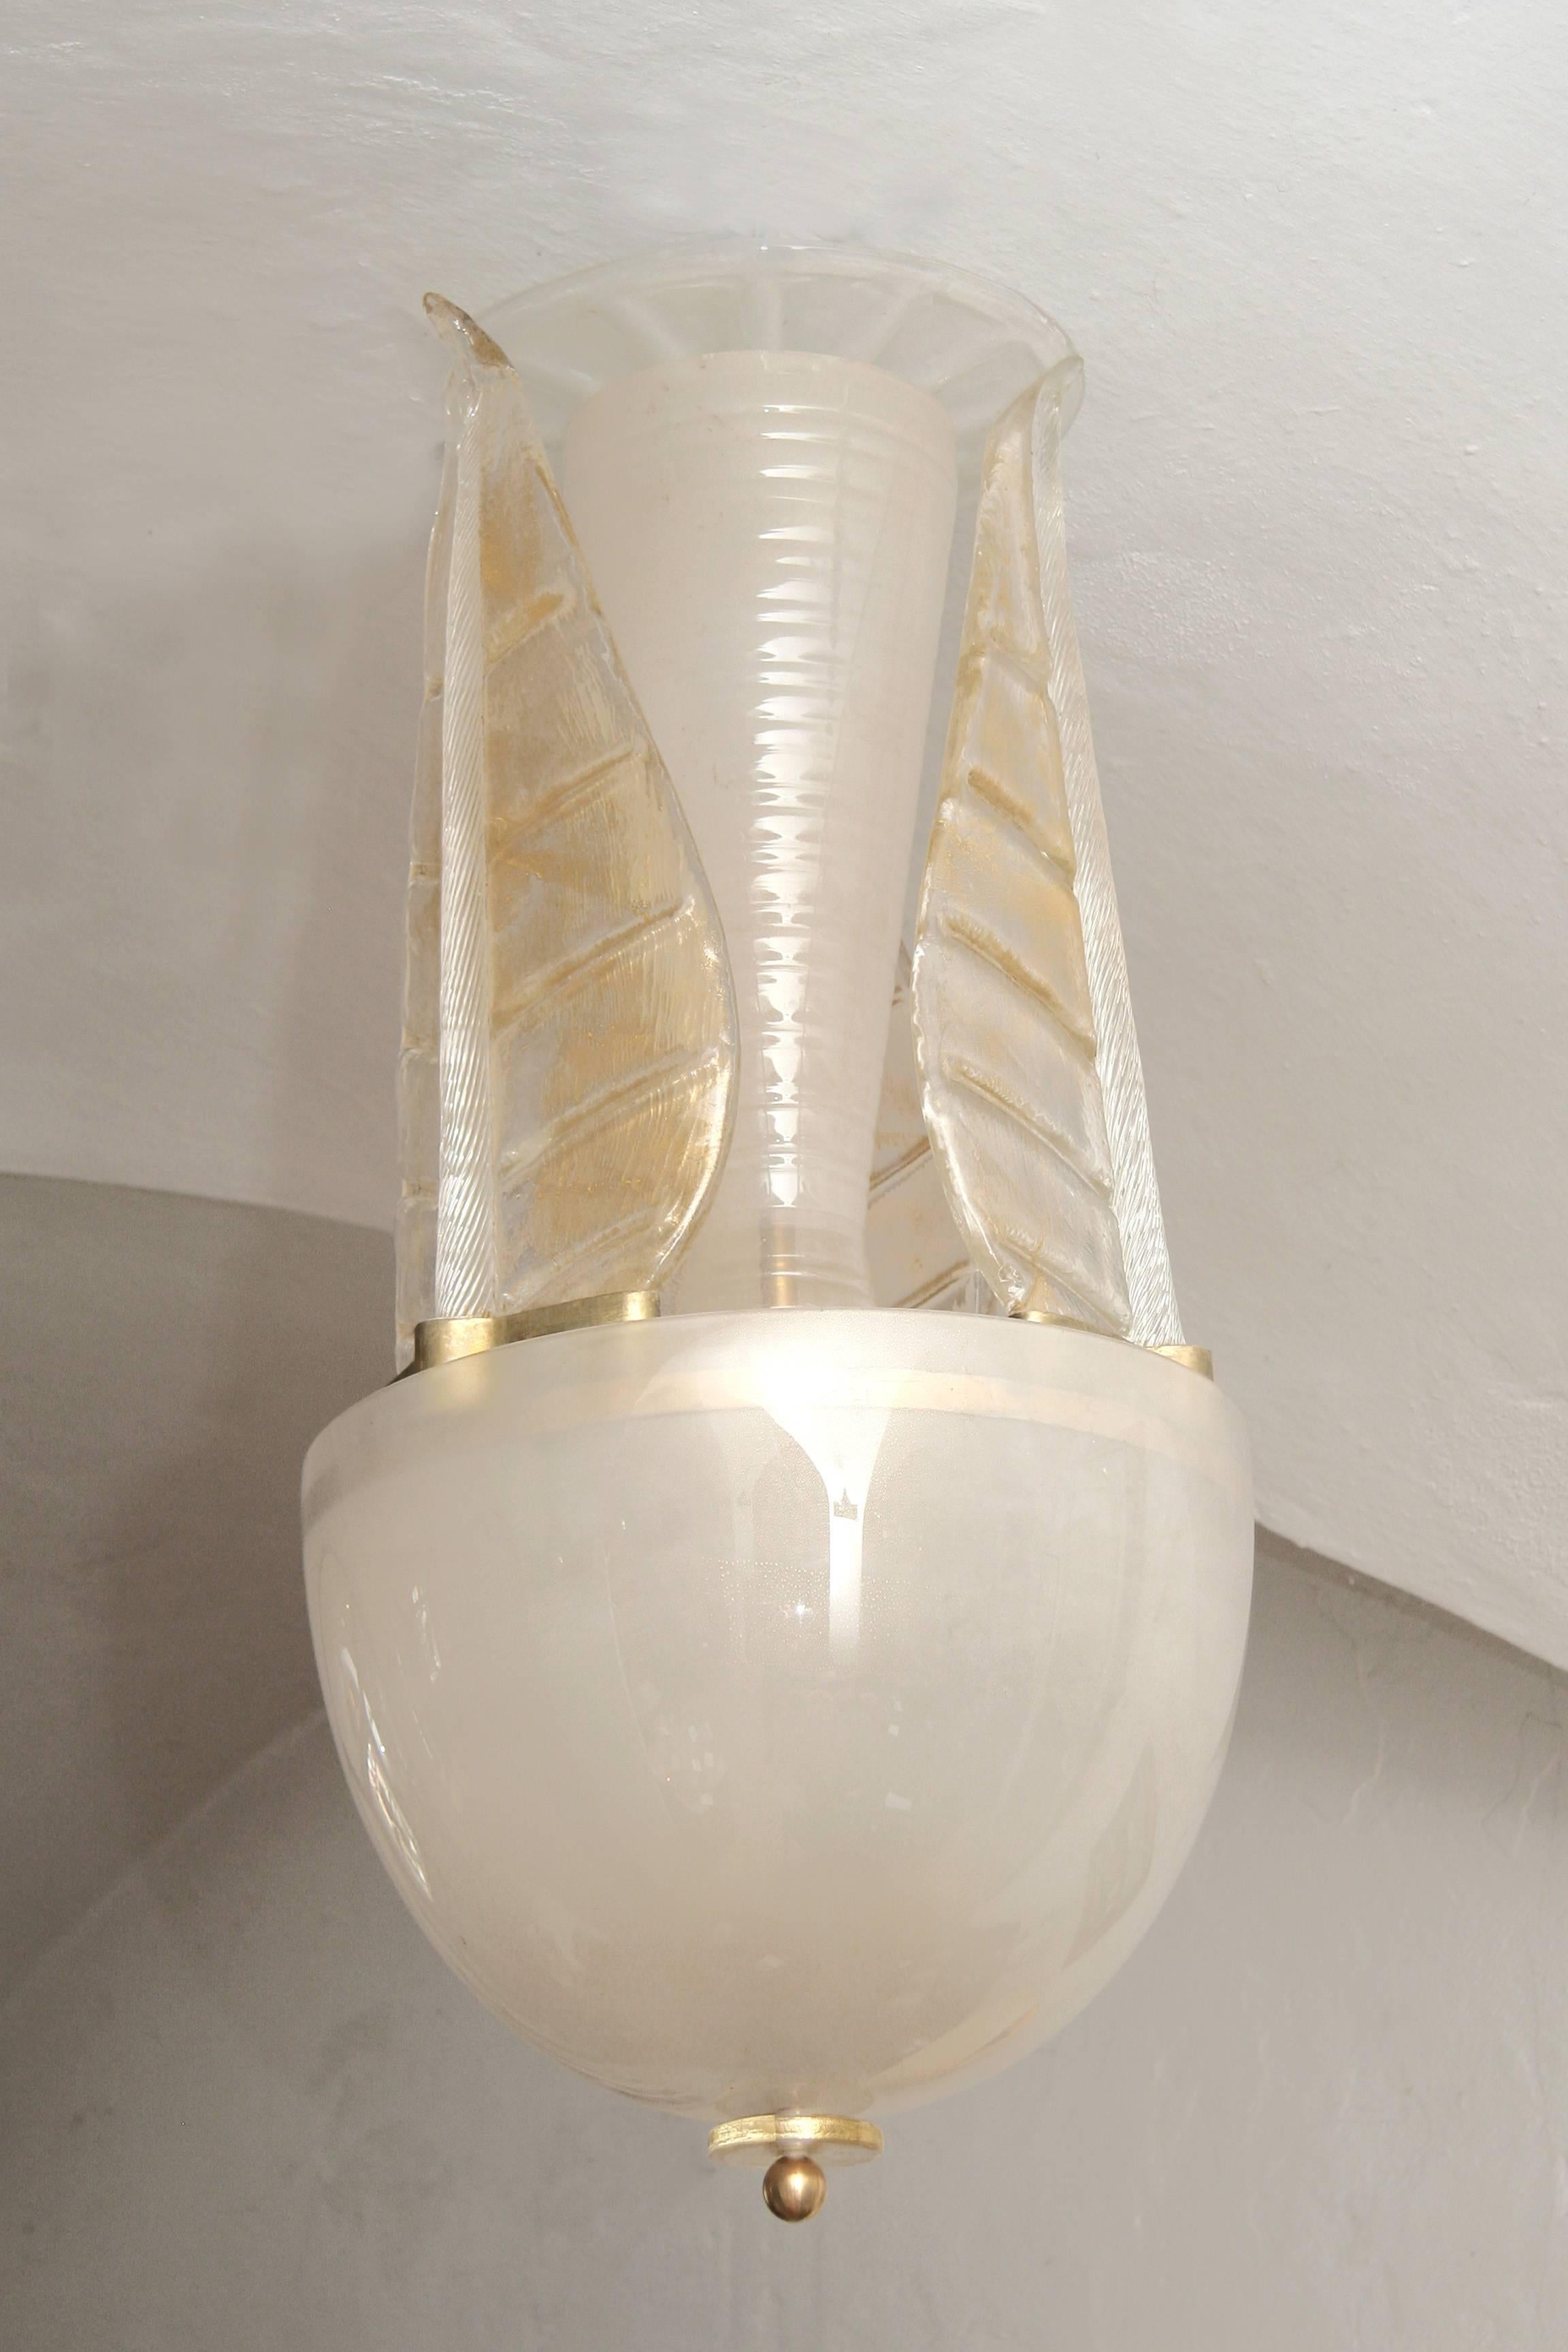 Elégant lustre en verre de Murano avec de fines particules d'or dans le lot de verre.
Trois grandes feuilles embrassant la tige centrale, un globe terrestre de 45 cm de diamètre
enlace l'électrification à trois lumières et complète la forme du